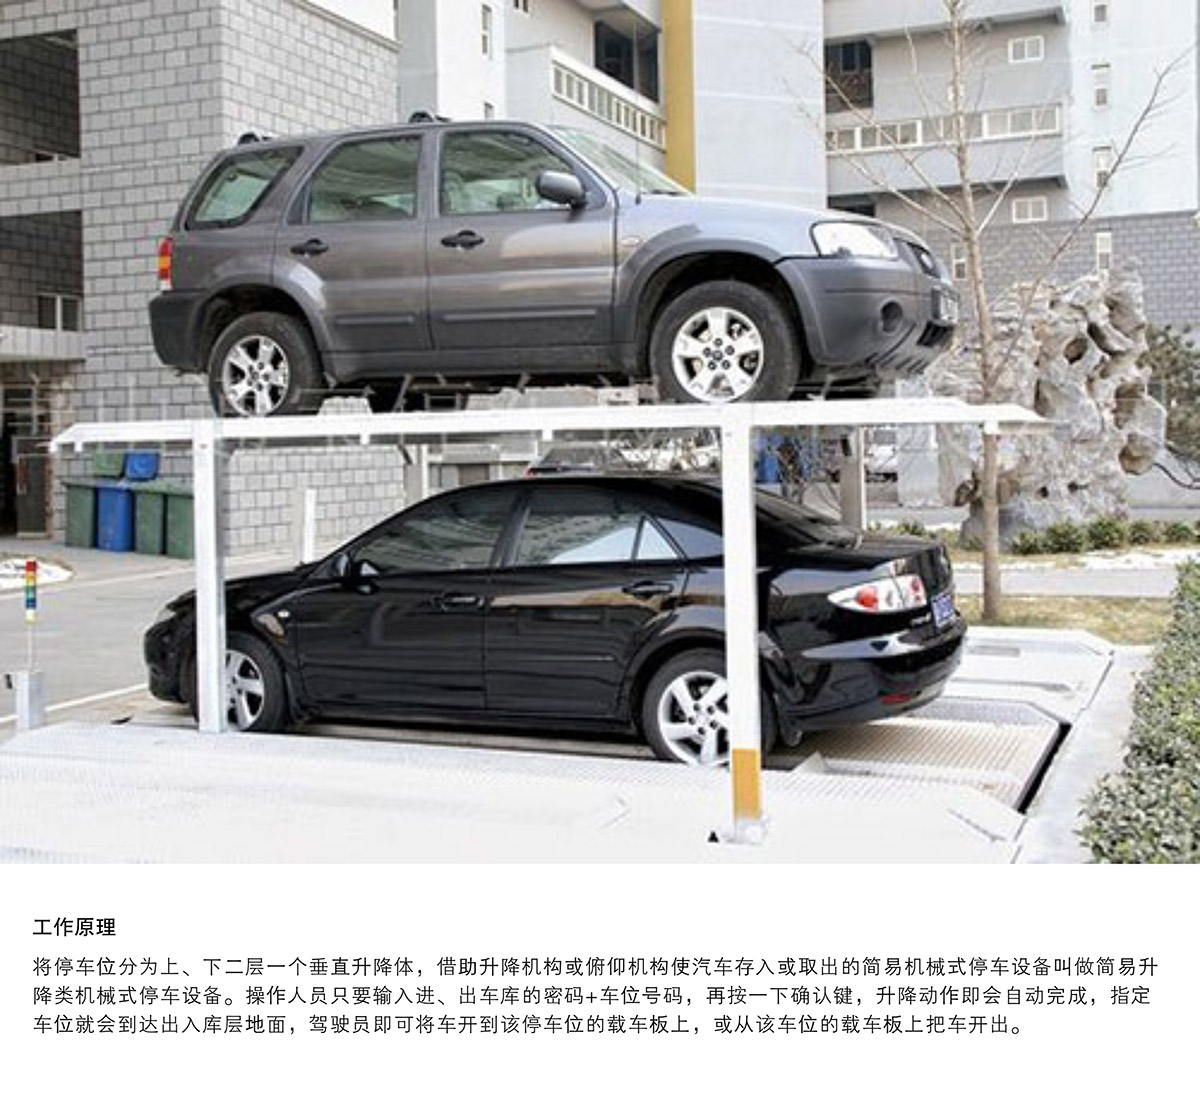 四川成都PJS2D1二层地坑简易升降停车设备工作原理.jpg